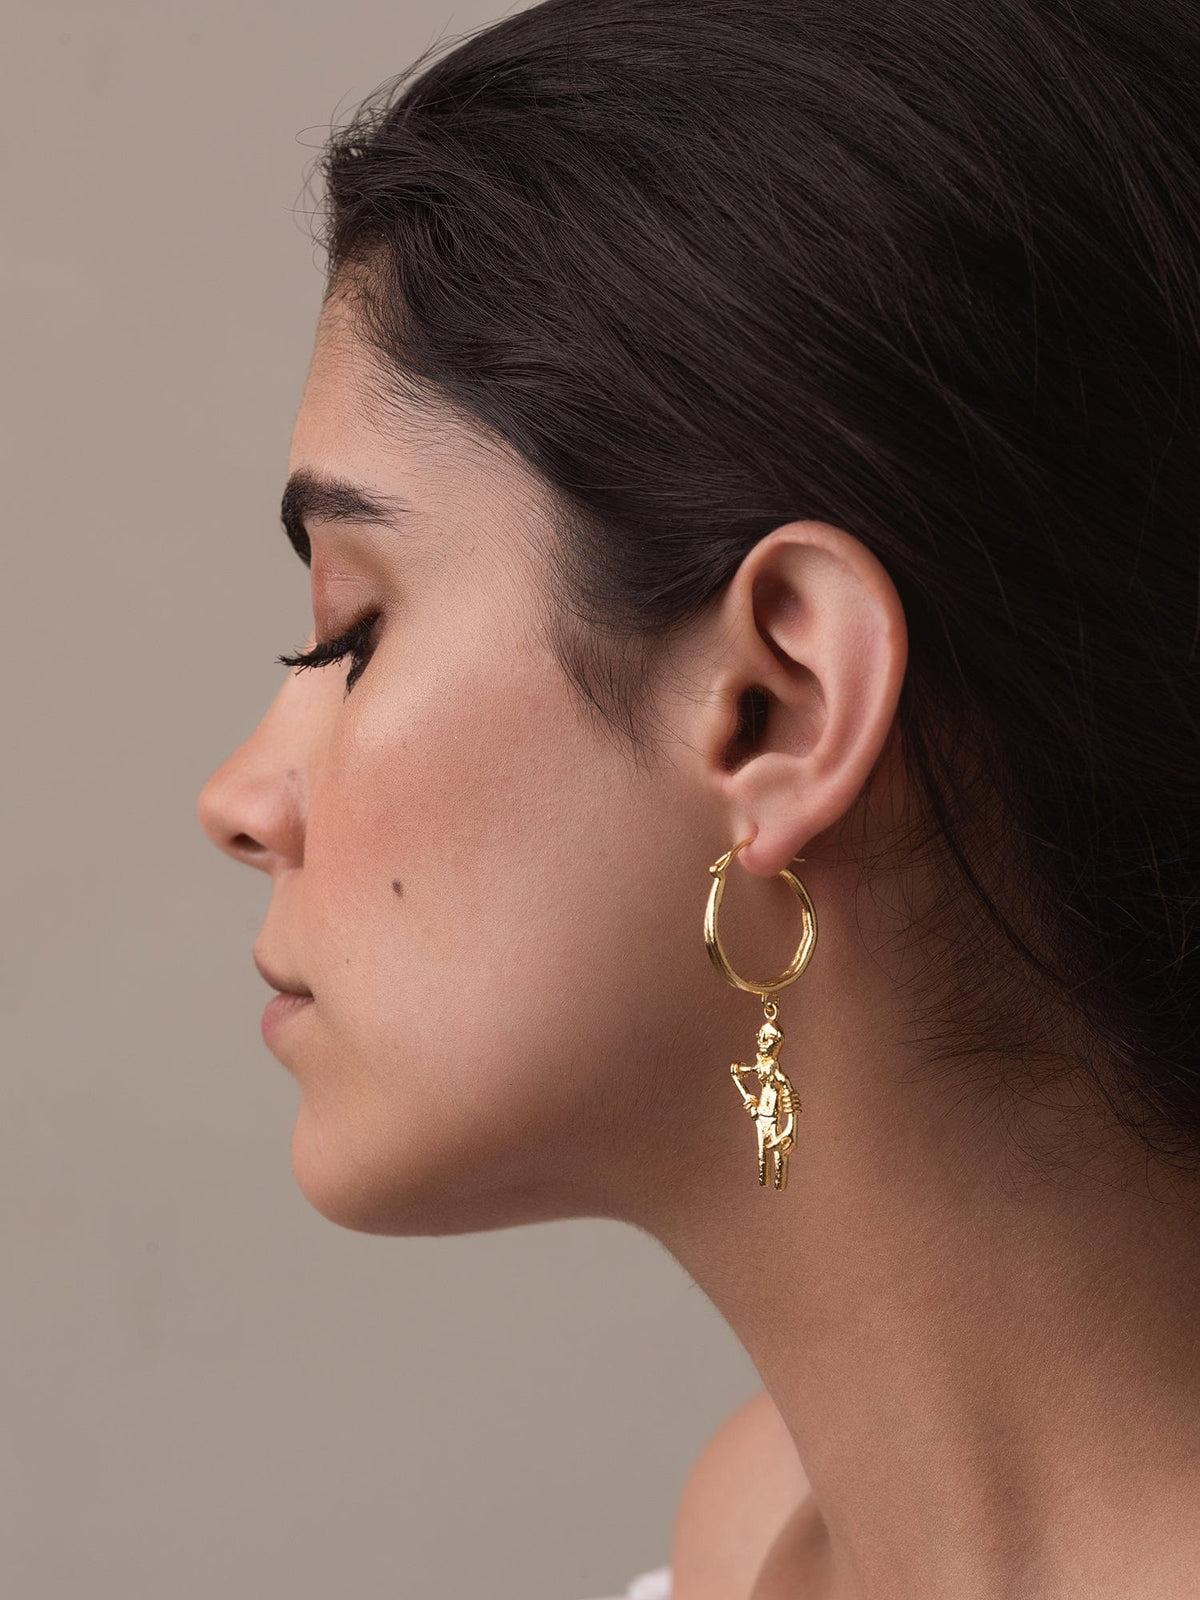 Dancing girl earrings